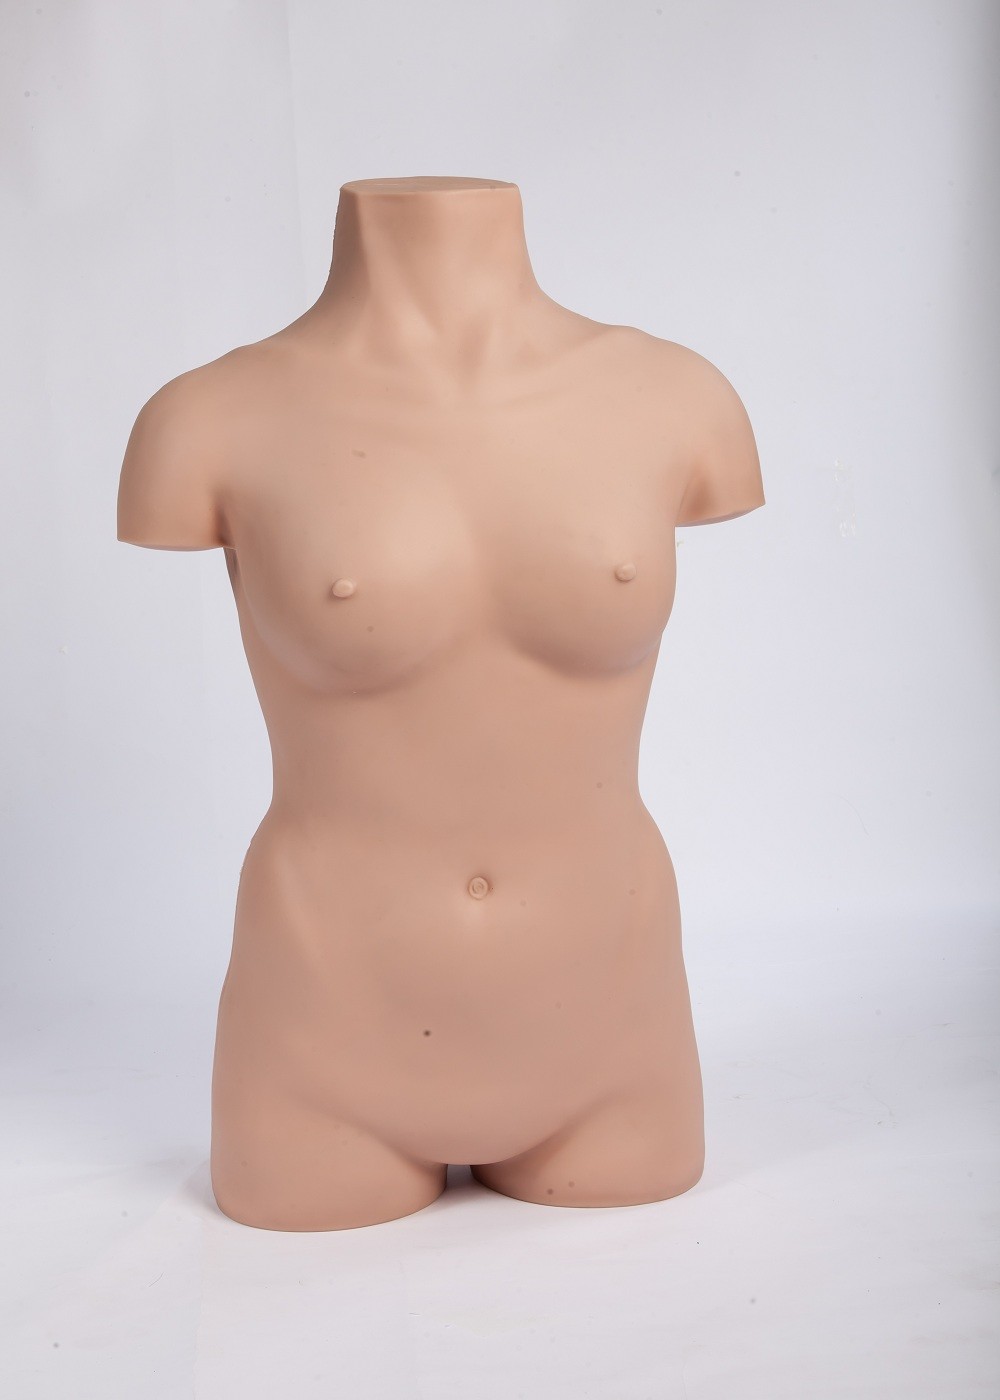 Modelos de entrenamiento quirúrgicos de la operación aséptica realista del cuerpo femenino para la educación